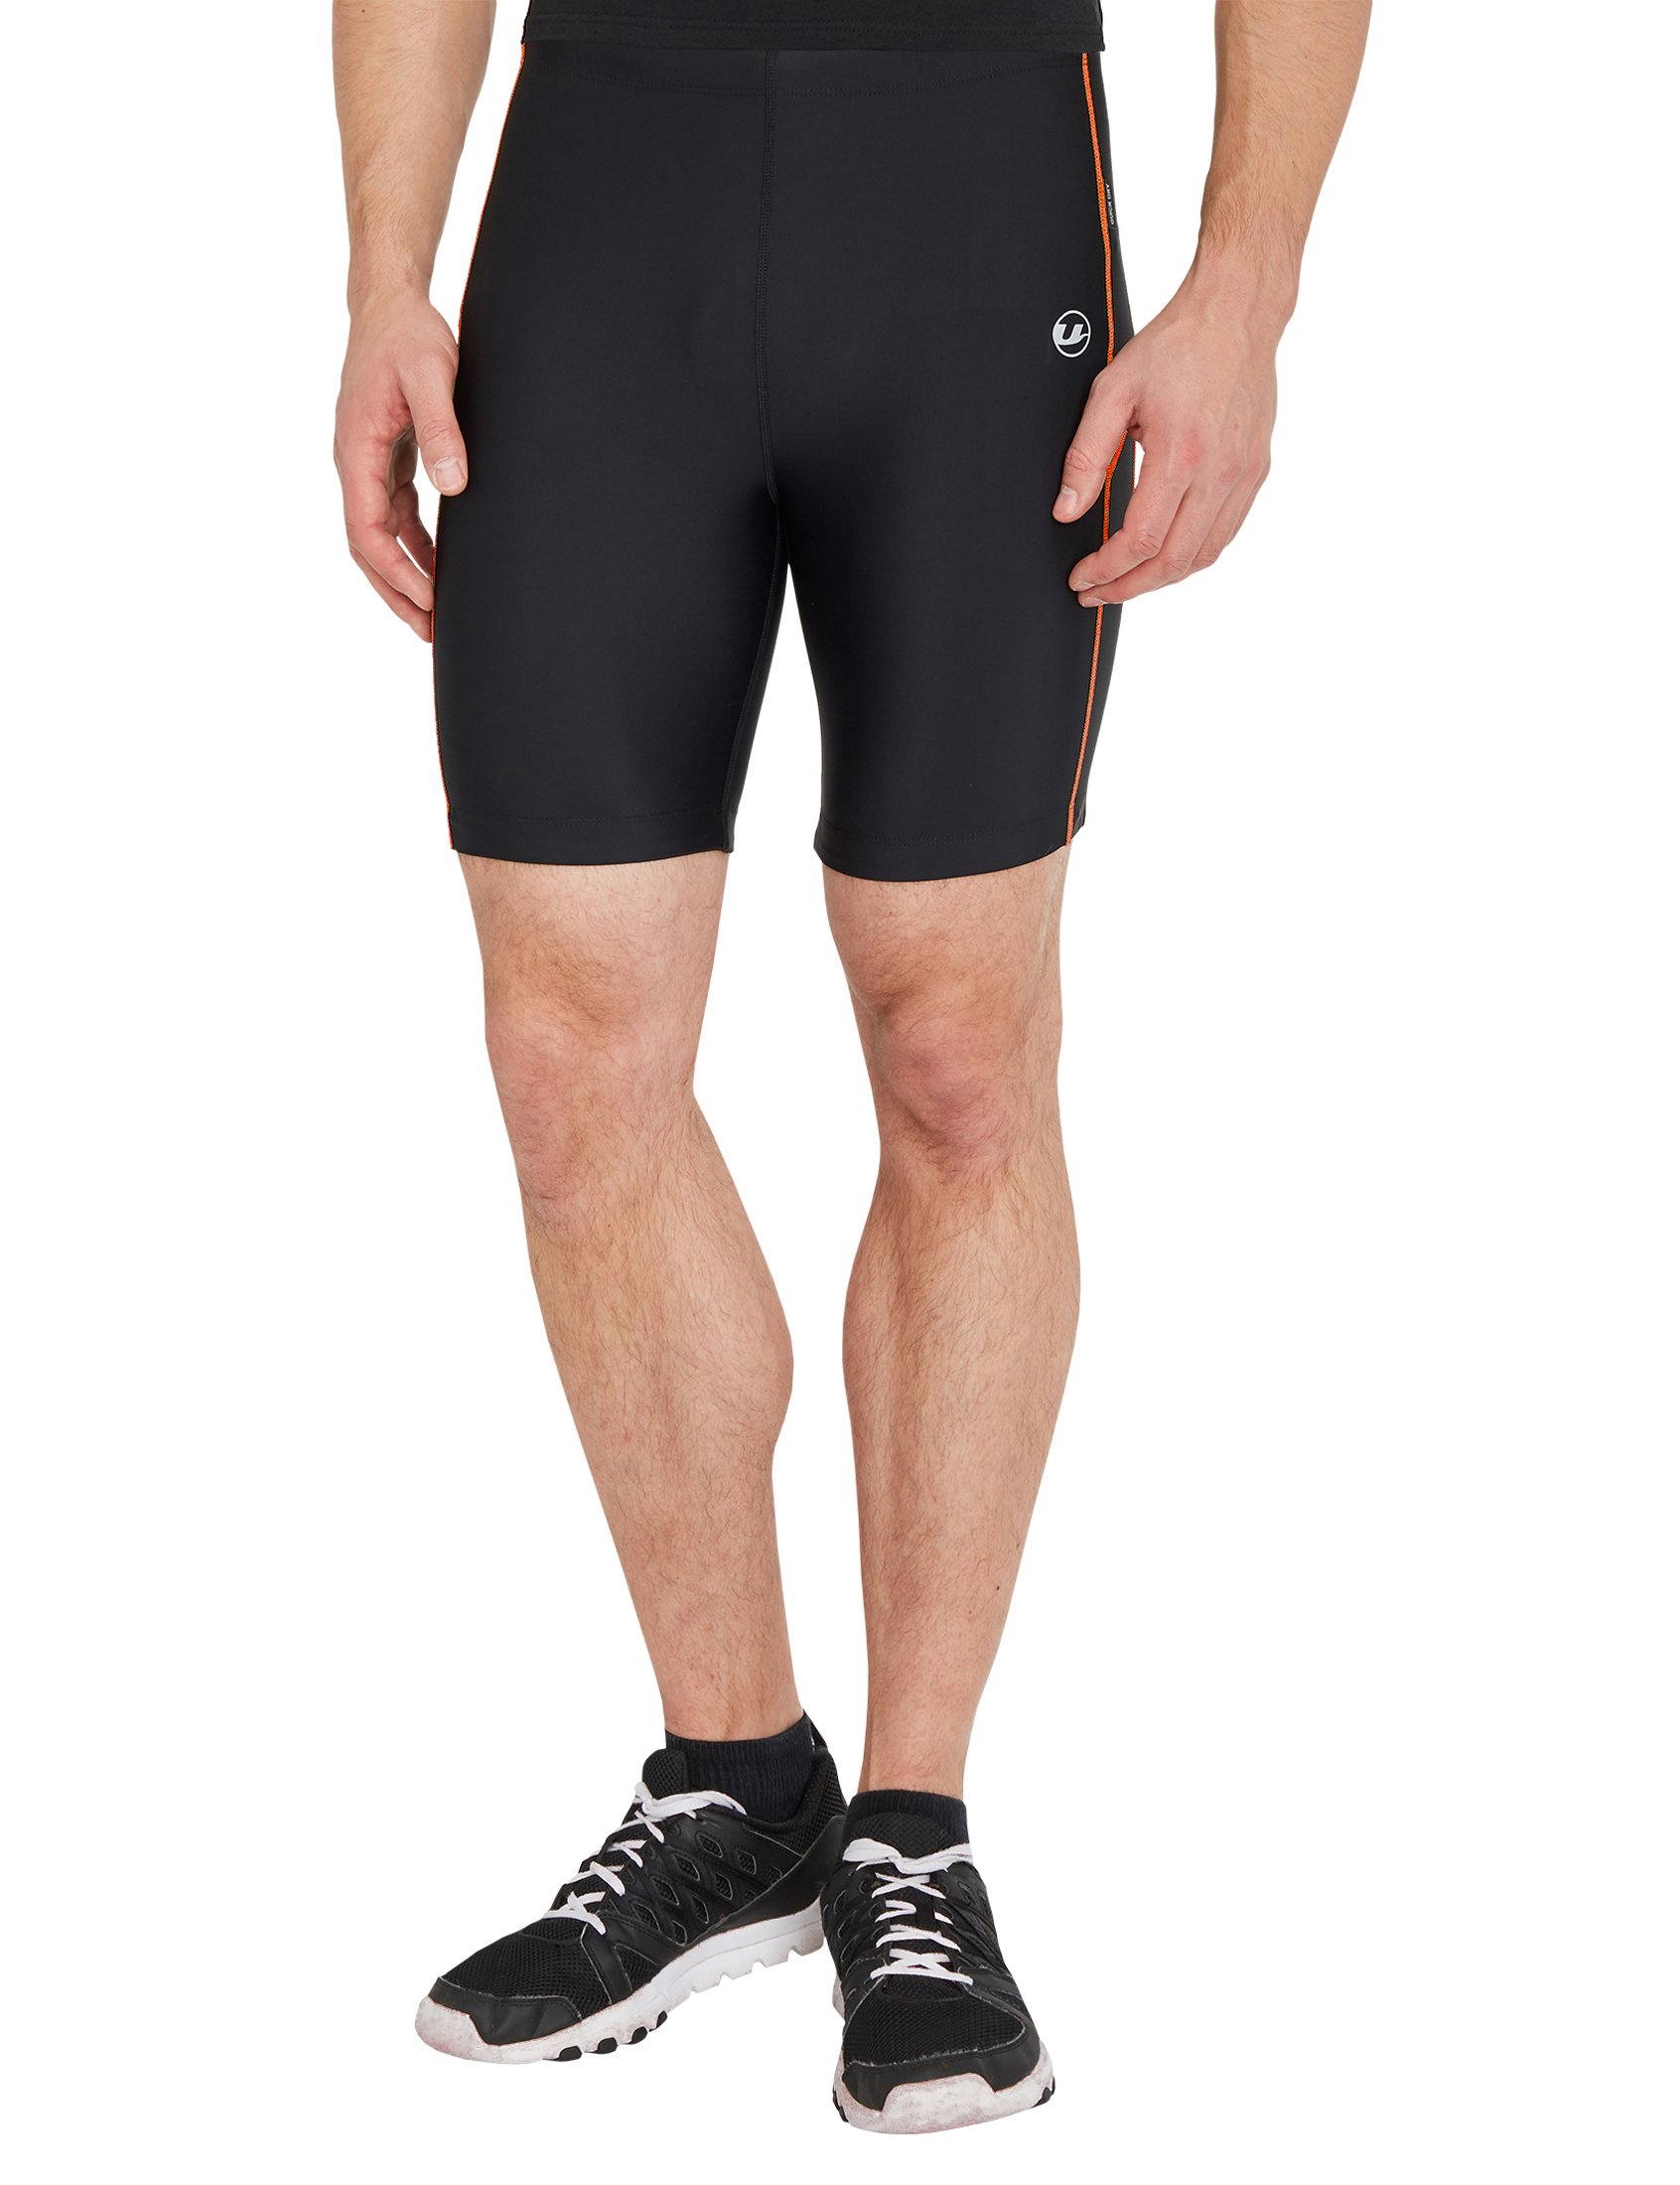 Ultrasport Herren Laufhose Shorts mit Quick-Dry-Funktion, Schwarz/Neon Orange, M